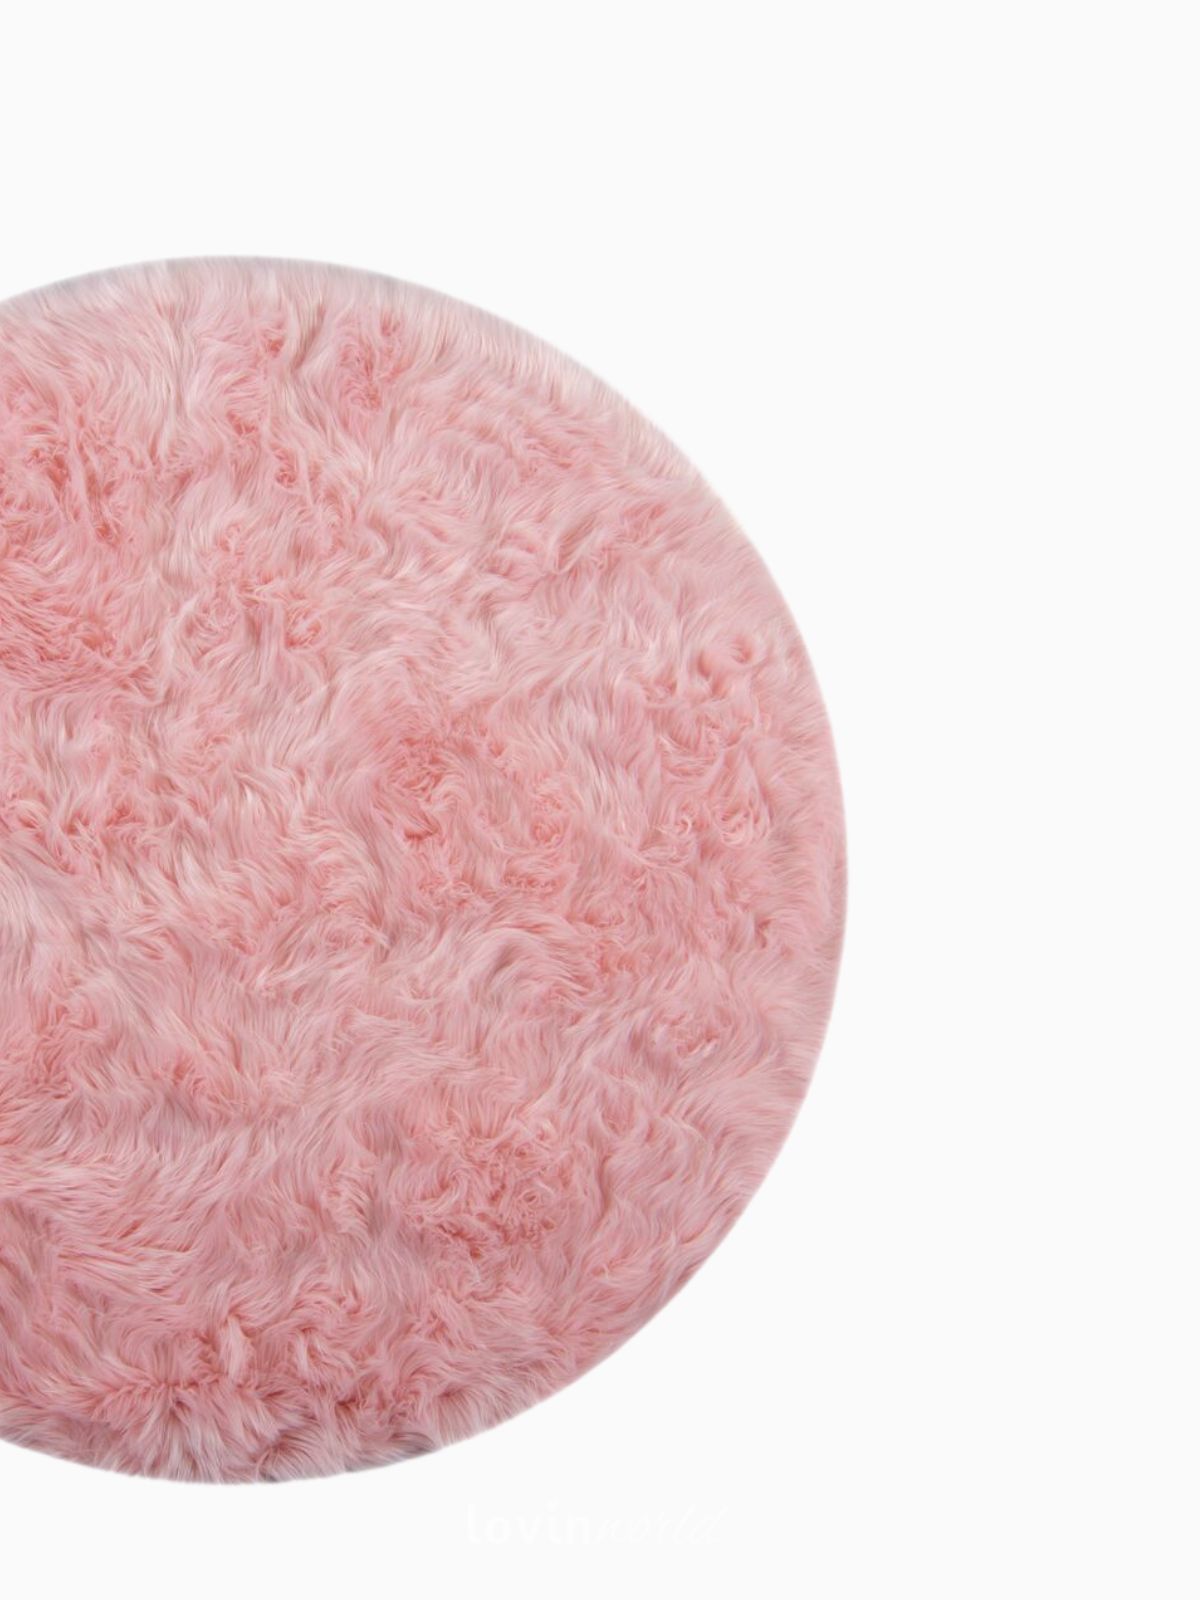 Tappeto rotondo shaggy Sheepskin in poliestere, colore rosa 120x120 cm.-5